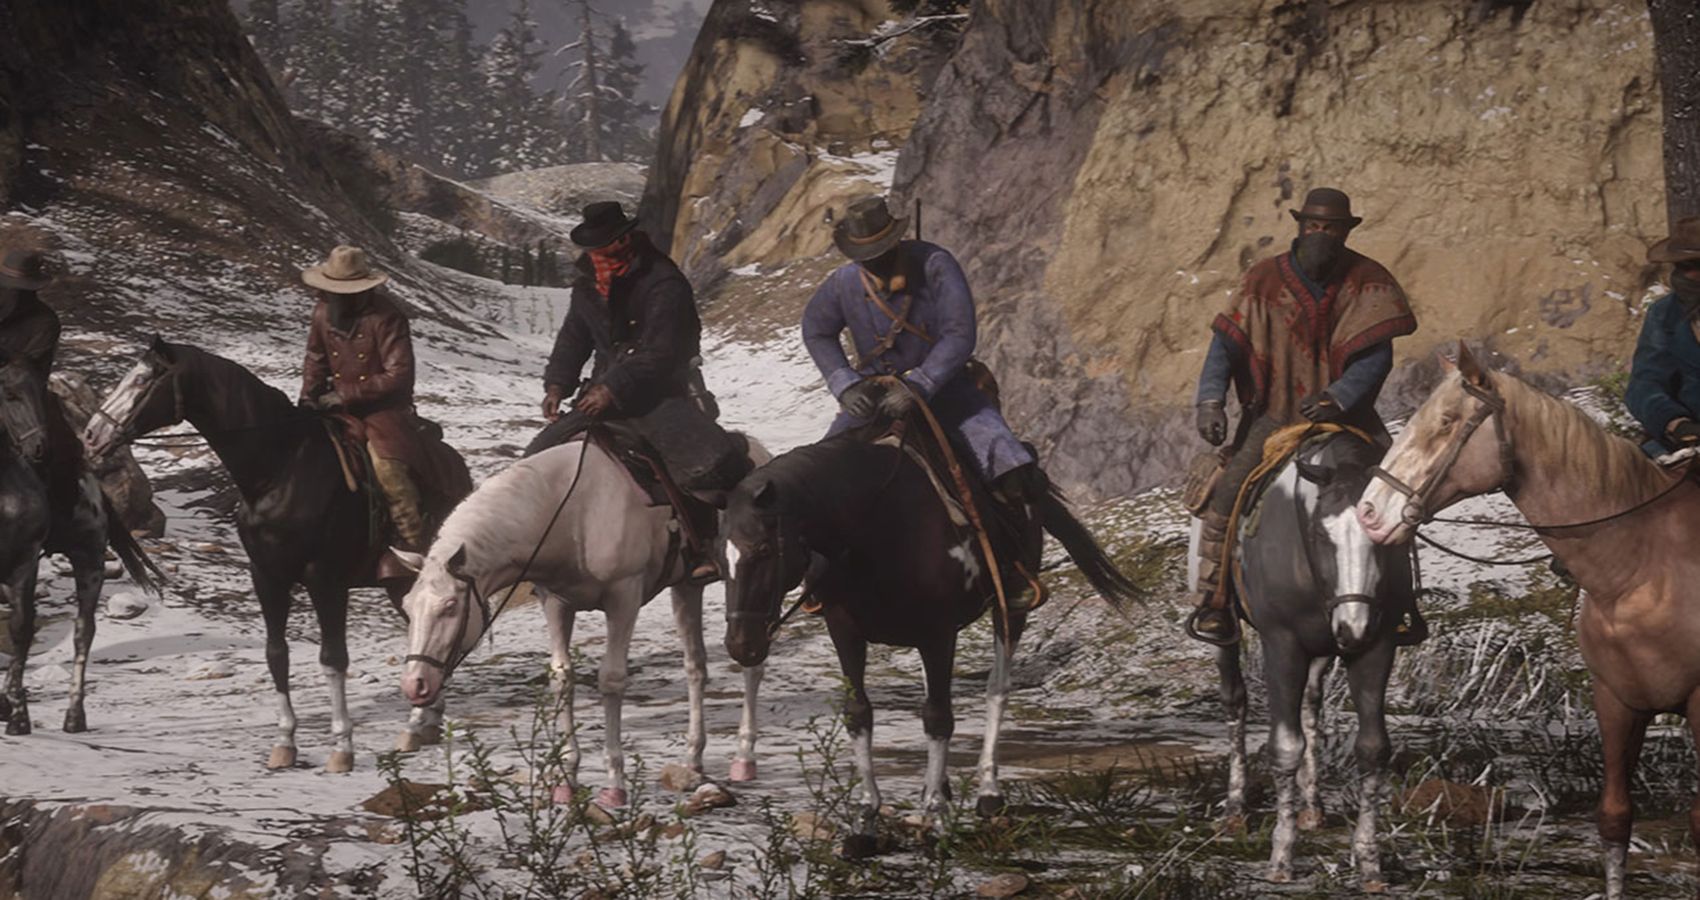 Red Dead Redemption 2 – ში ყველა ცხენი ყველაზე უარესიდან საუკეთესოდ მდებარეობს